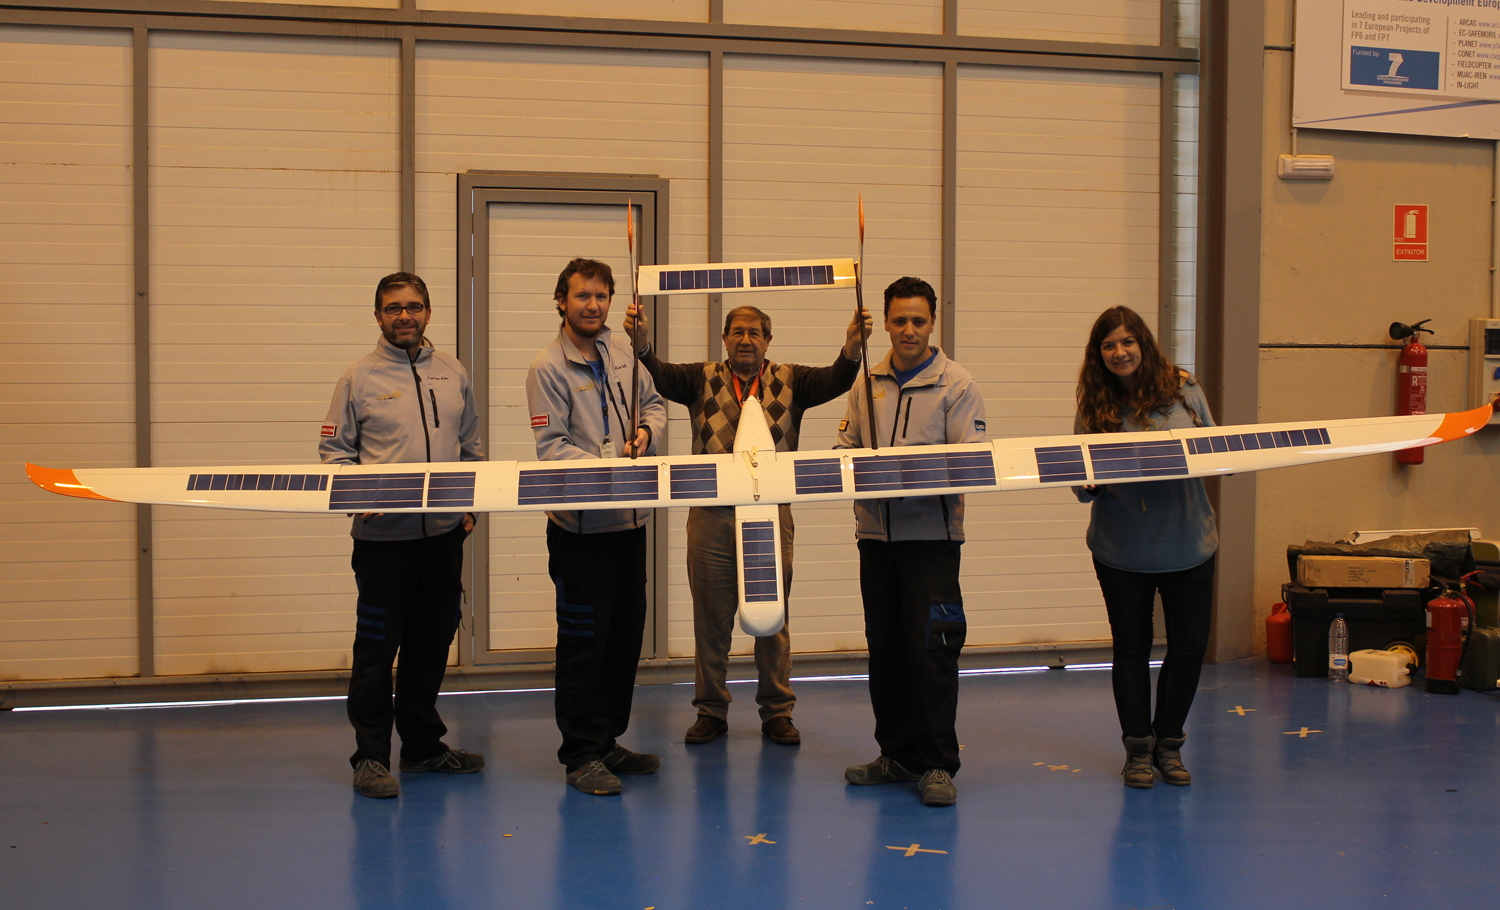 Energías renovables: Avión a base de energía solar fotovoltaica